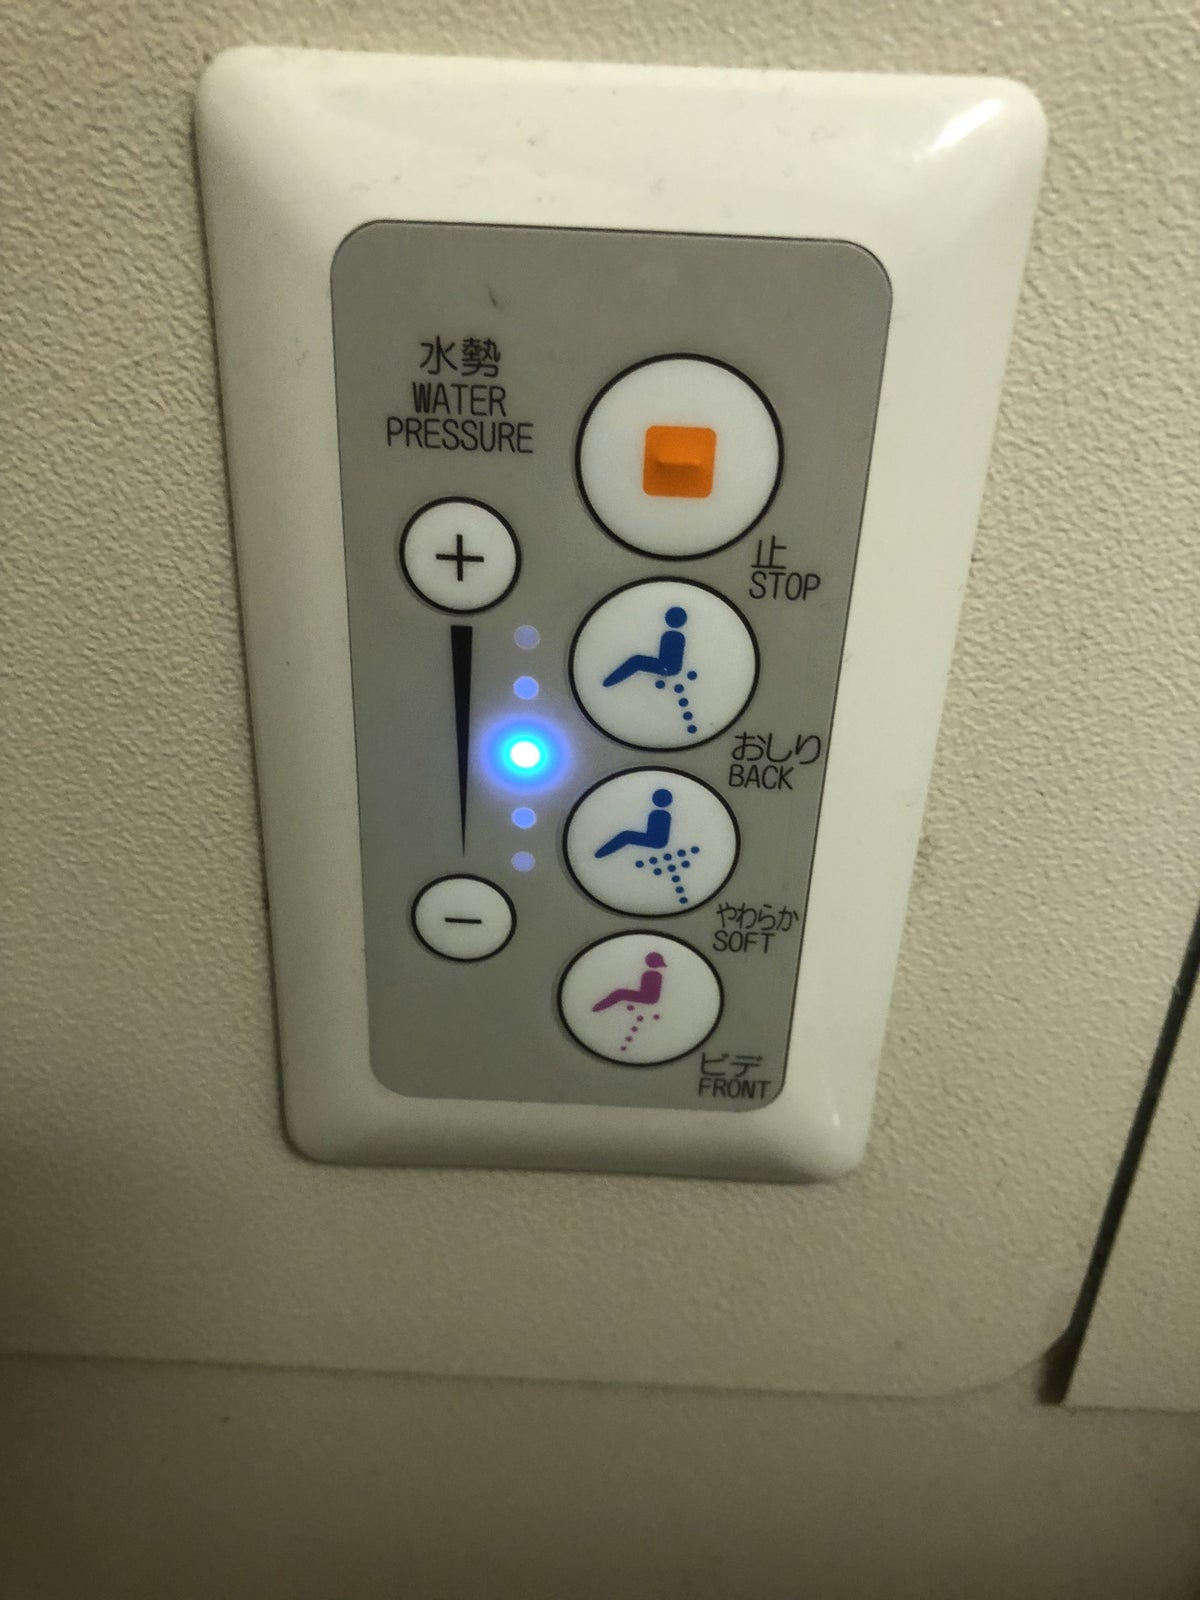 Japan Airlines 777 First Class Bidet Buttons